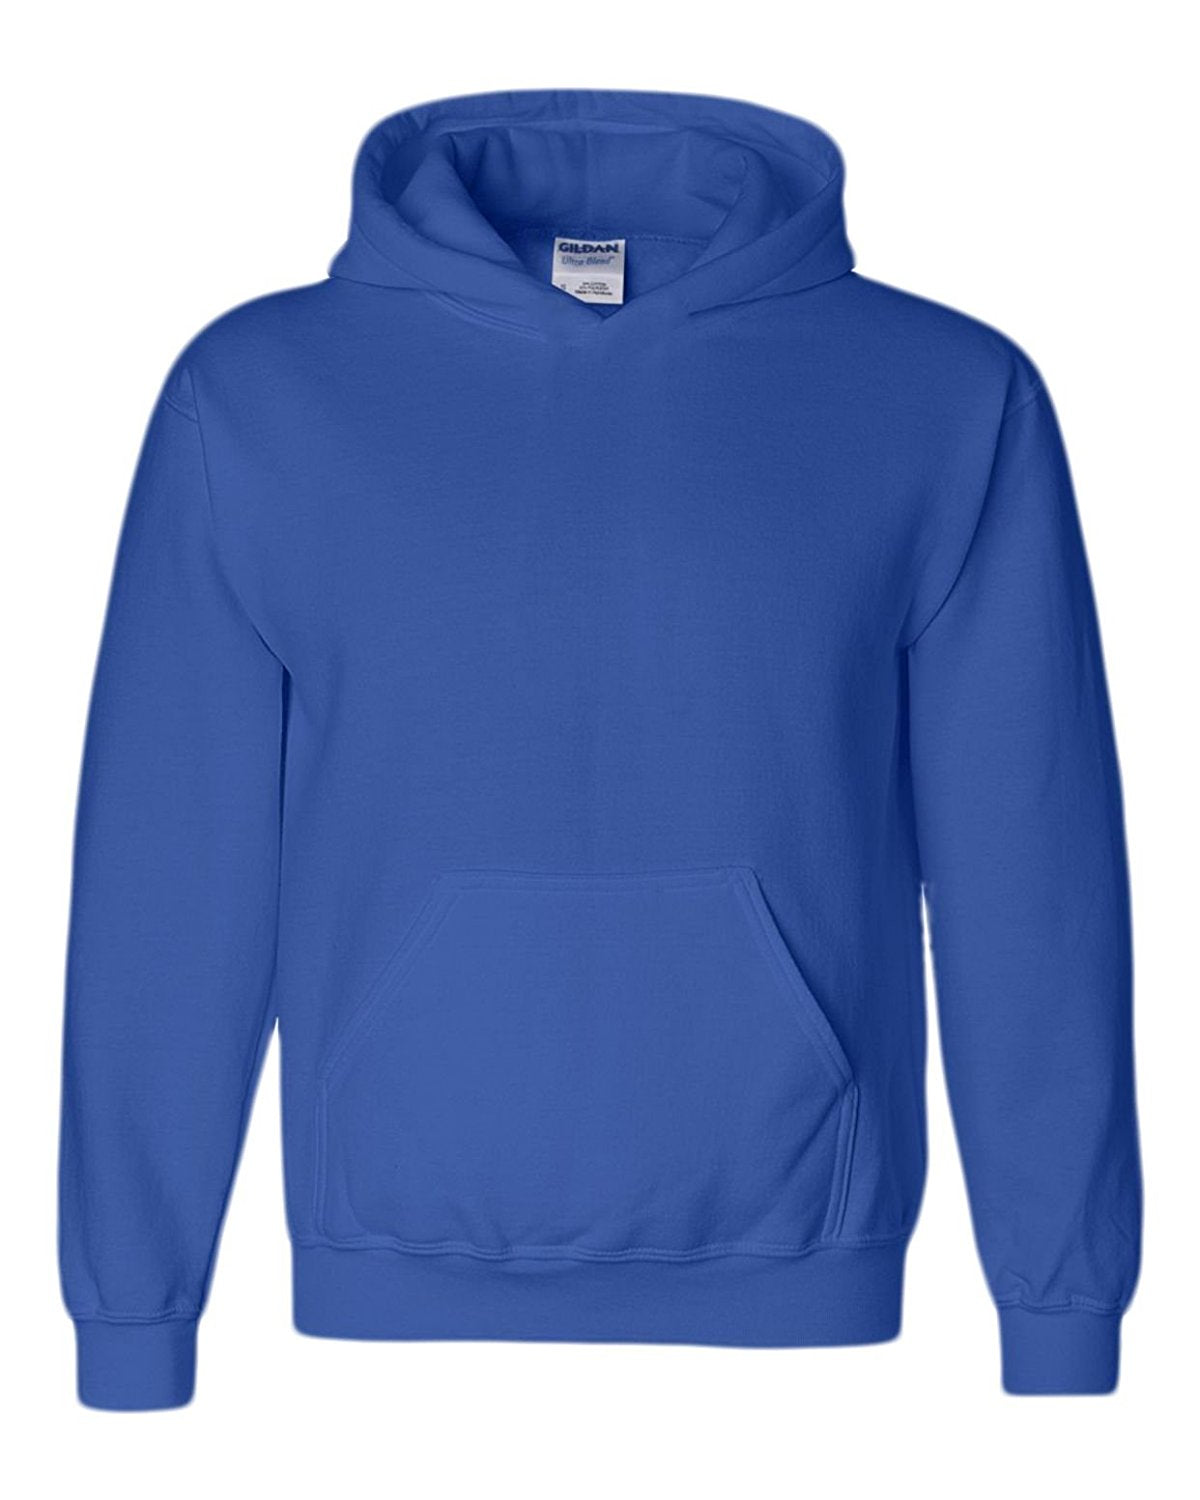 Gildan Blank Hoodie - Hooded Sweatshirt - Unisex Style 18500 Adult Pul ...